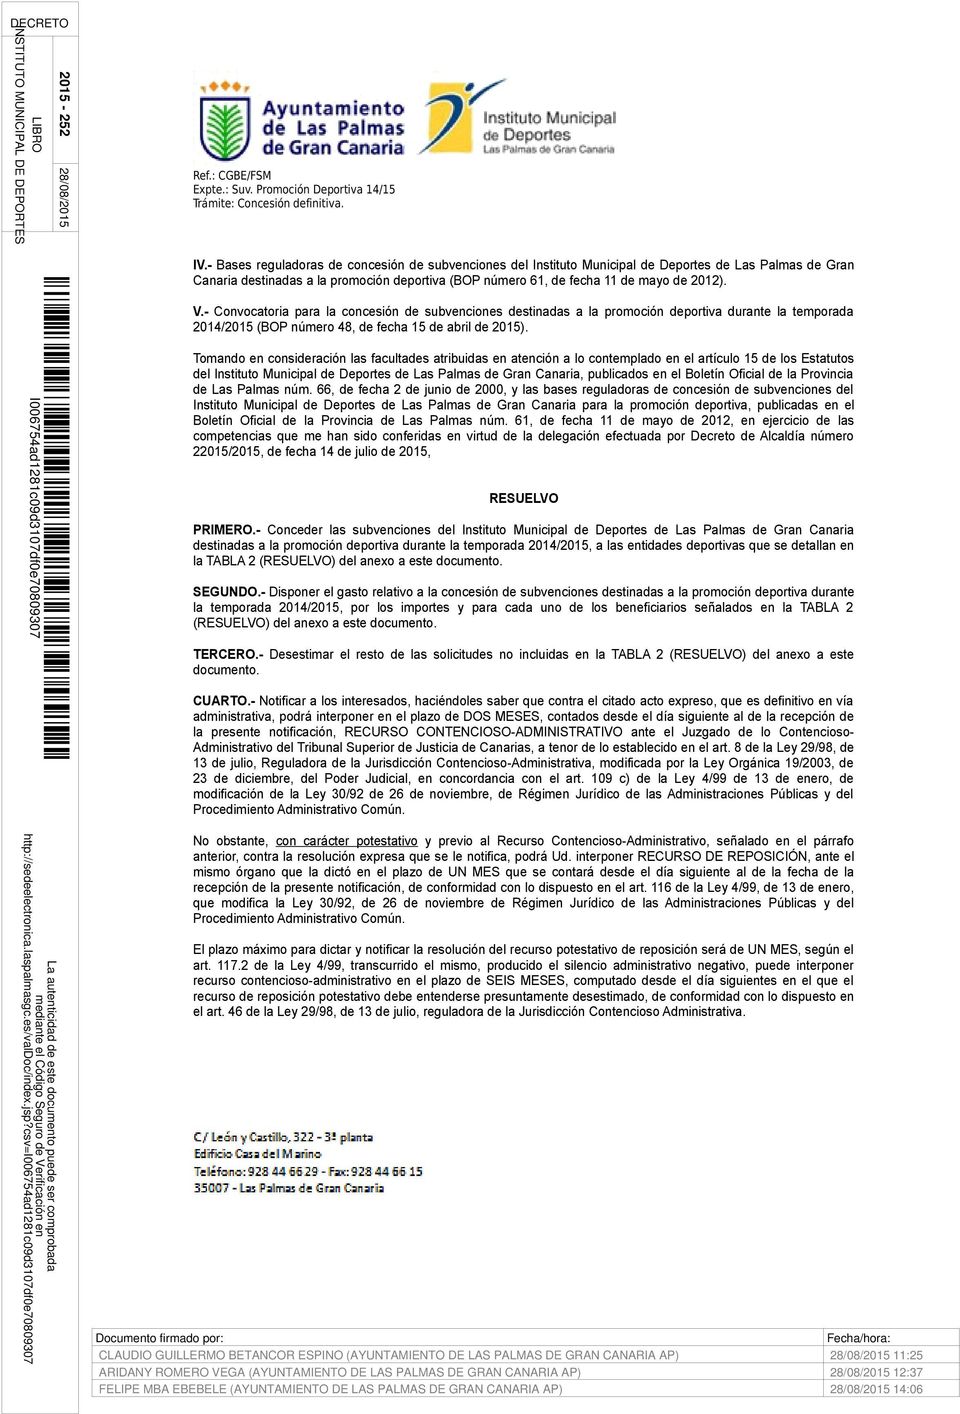 Tomando en consideración las facultades atribuidas en atención a lo contemplado en el artículo 15 de los Estatutos del Instituto Municipal de Deportes de Las Palmas de Gran Canaria, publicados en el